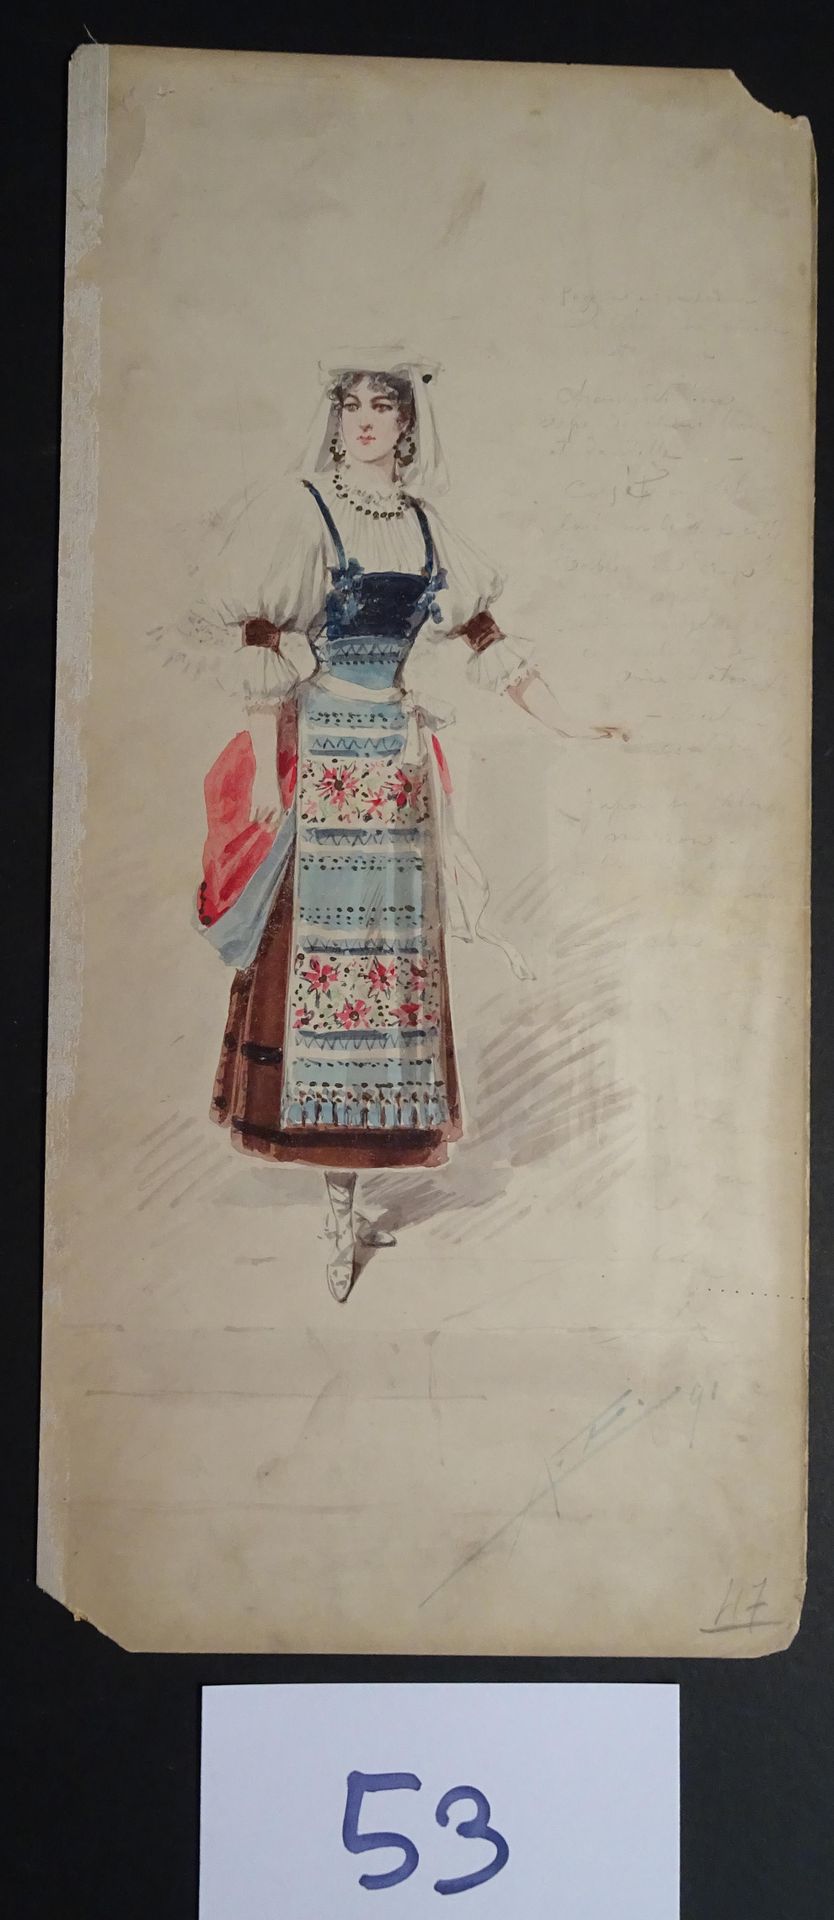 EDEL EDEL ALFREDO ( 1859-1912)

"Woman with a flowery dress". Gouache, watercolo&hellip;